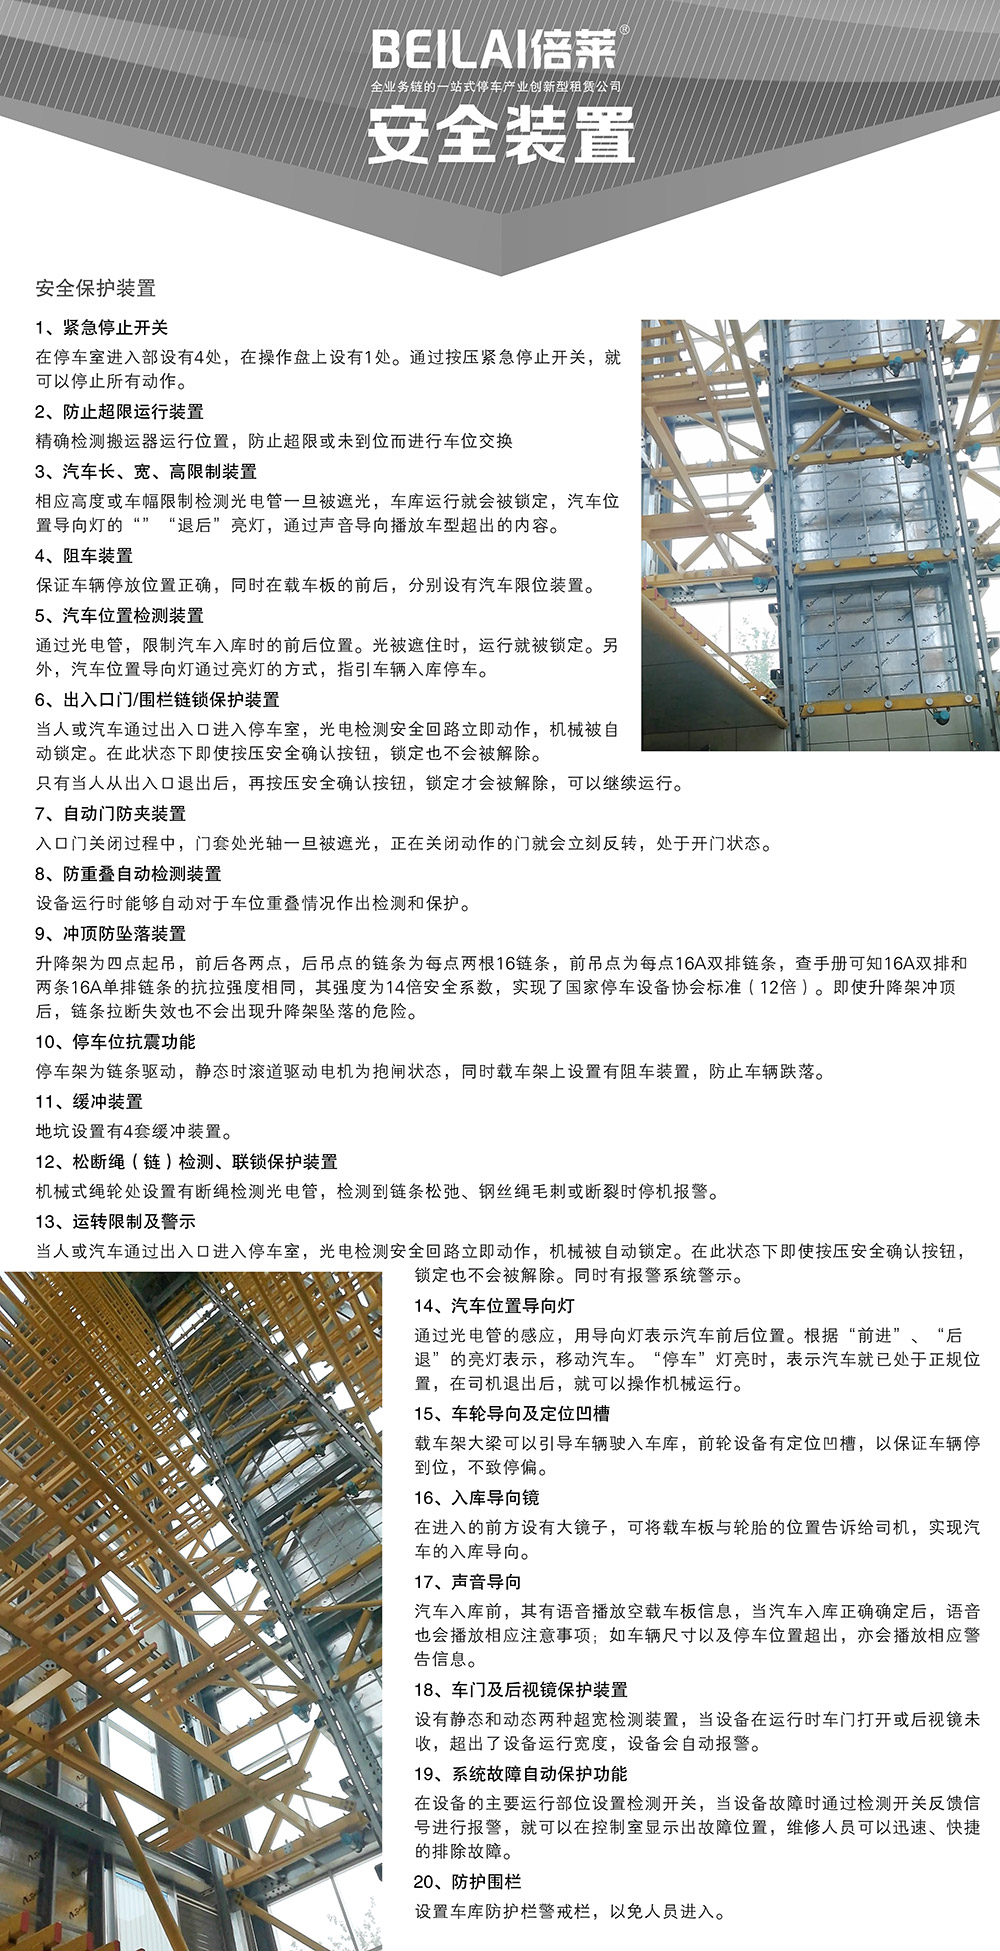 贵州贵阳垂直升降立体停车设备安全装置.jpg